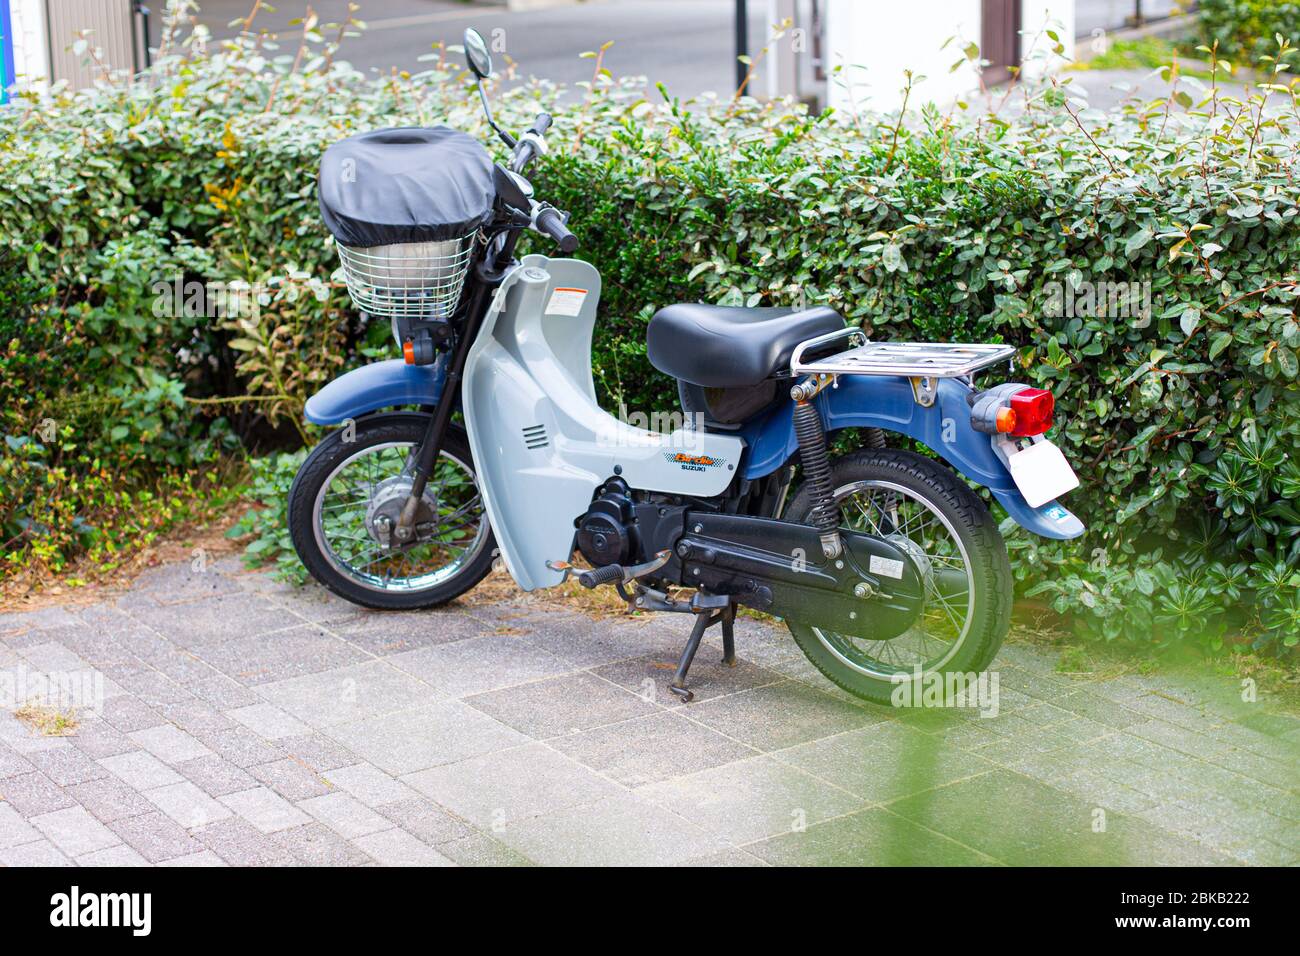 Suzuki Birdie popolare giapponese vintage retrò stile parcheggio moto nel parco all'aperto.12 Novembre 2015 Kobe, Giappone Foto Stock